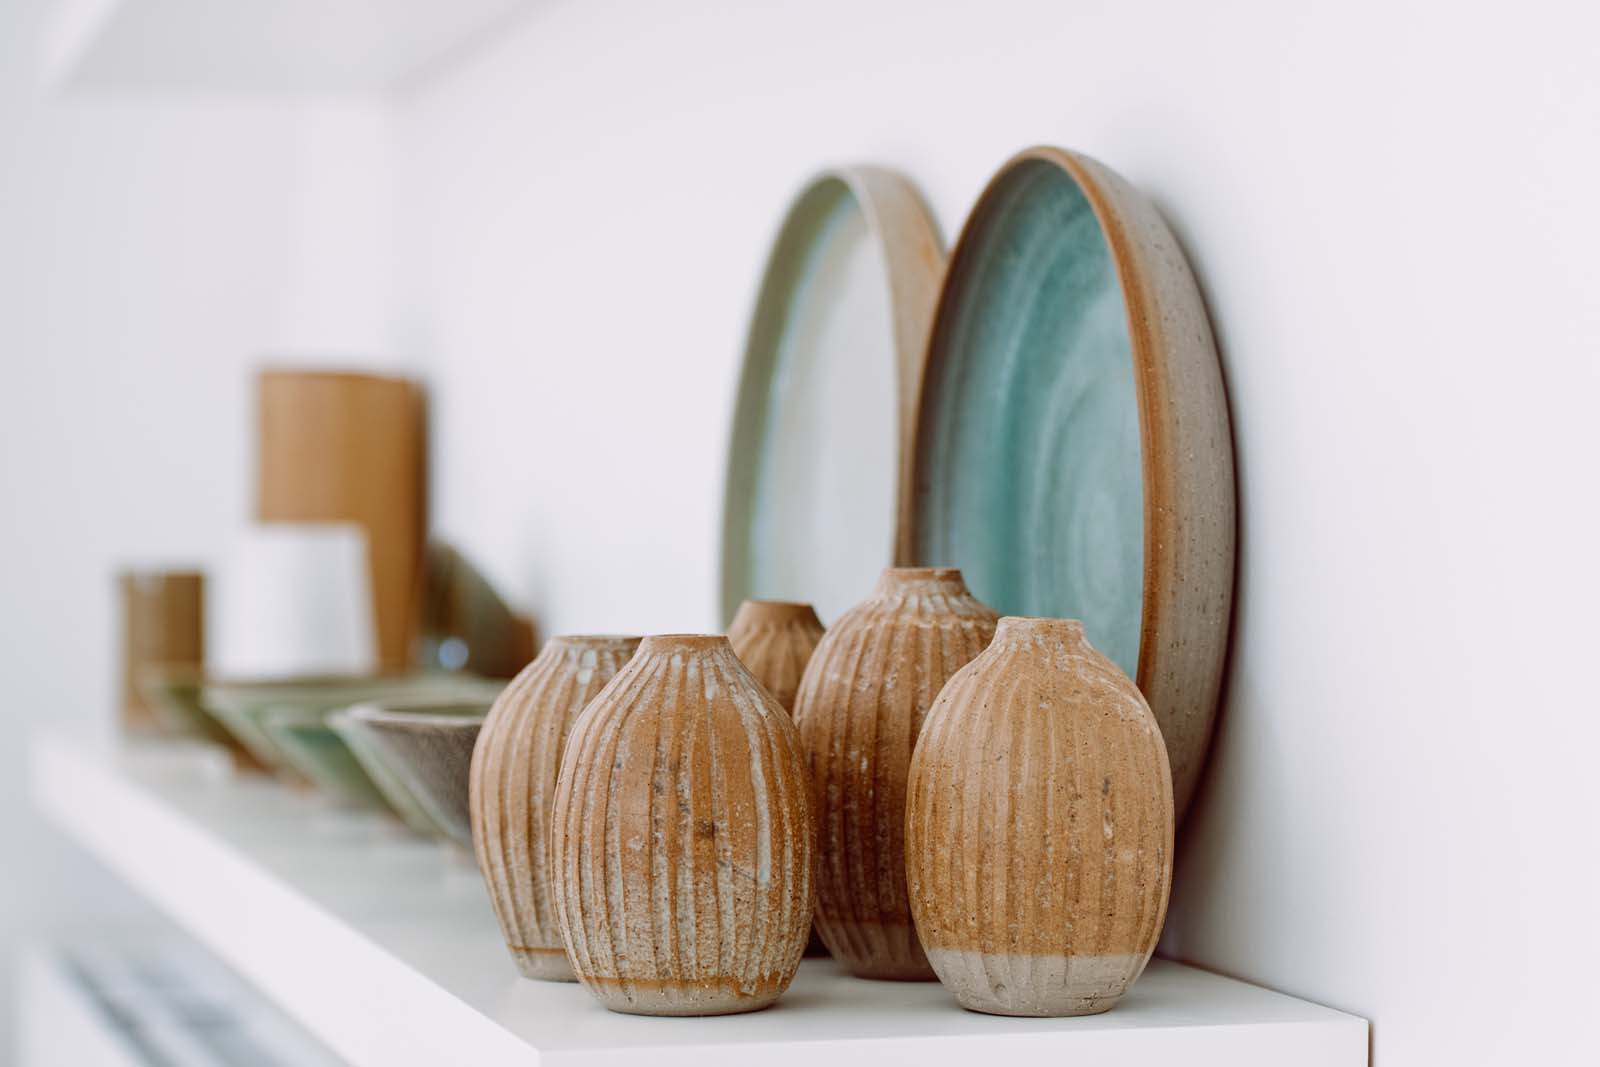 Ceramics by Ann Vermeersch